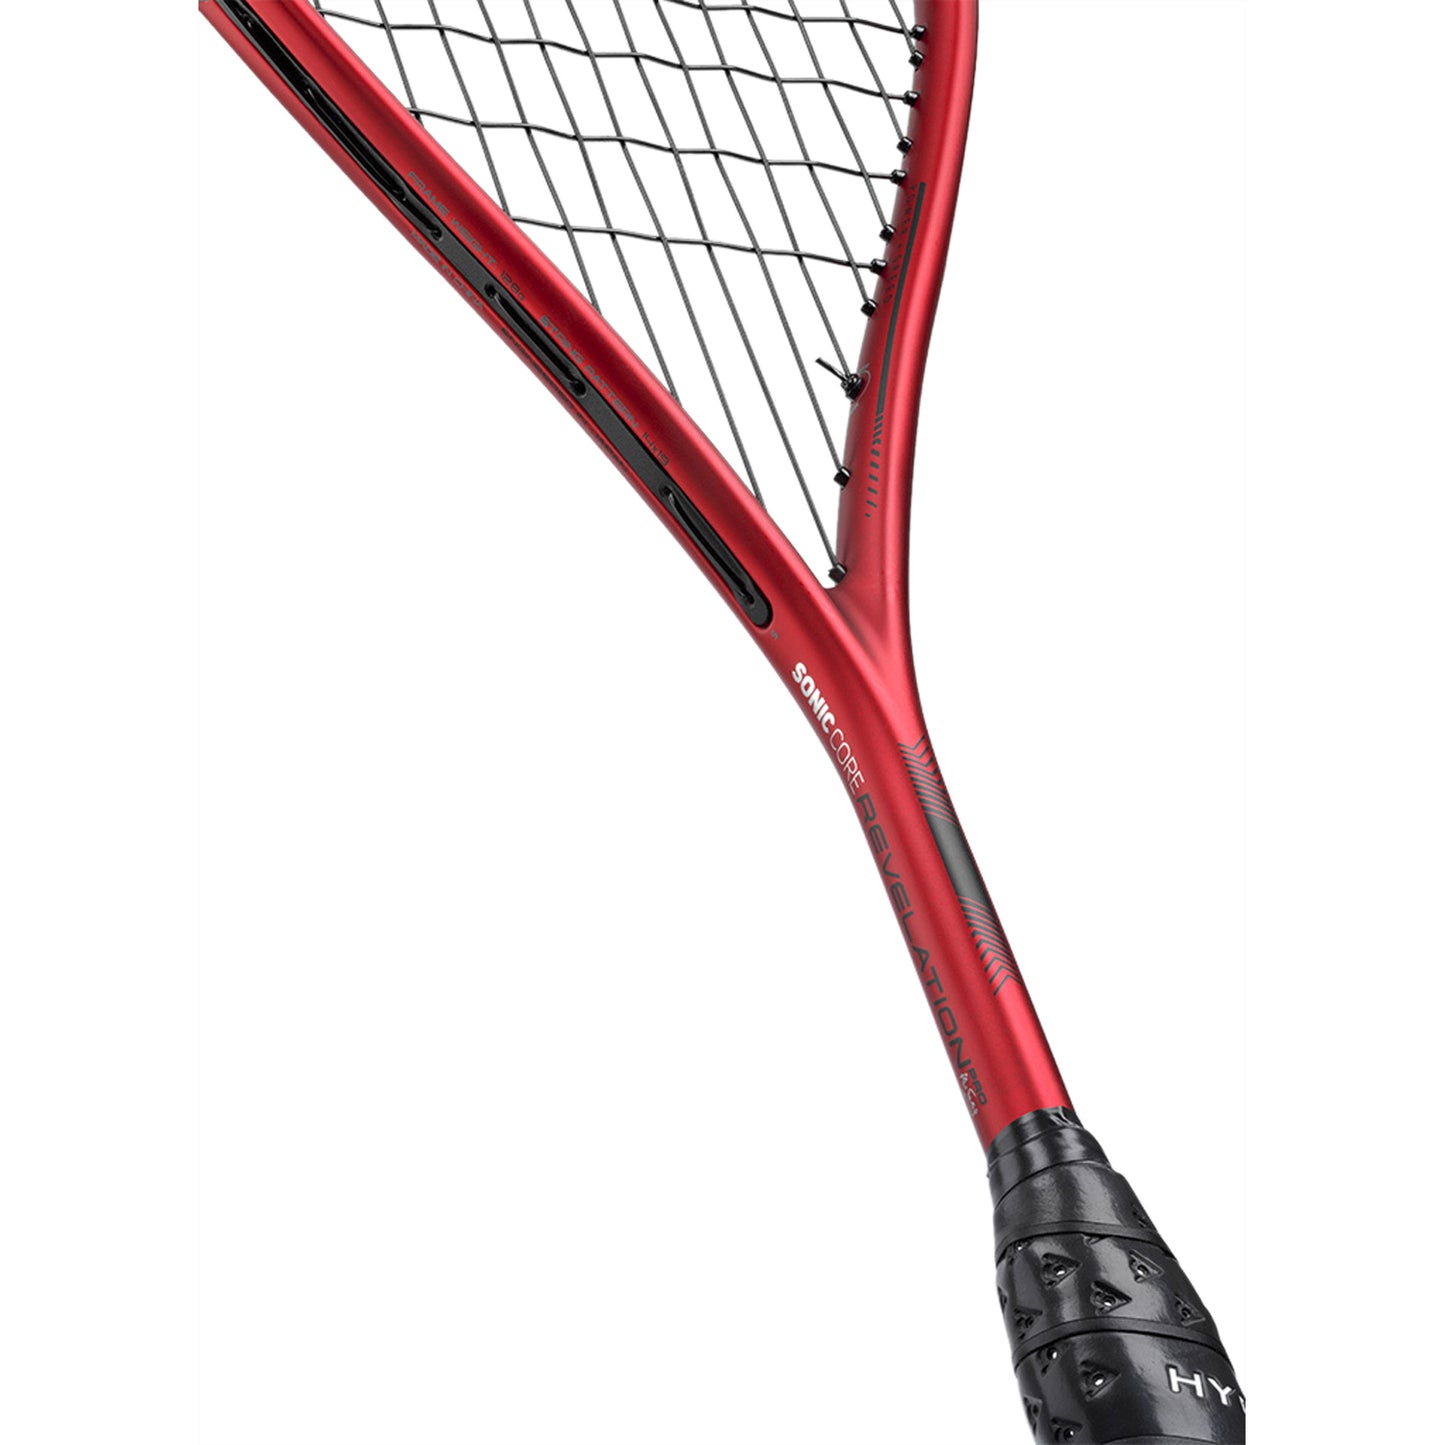 Dunlop Soniccore Revelation Pro HL Squash Racquet - Best Price online Prokicksports.com